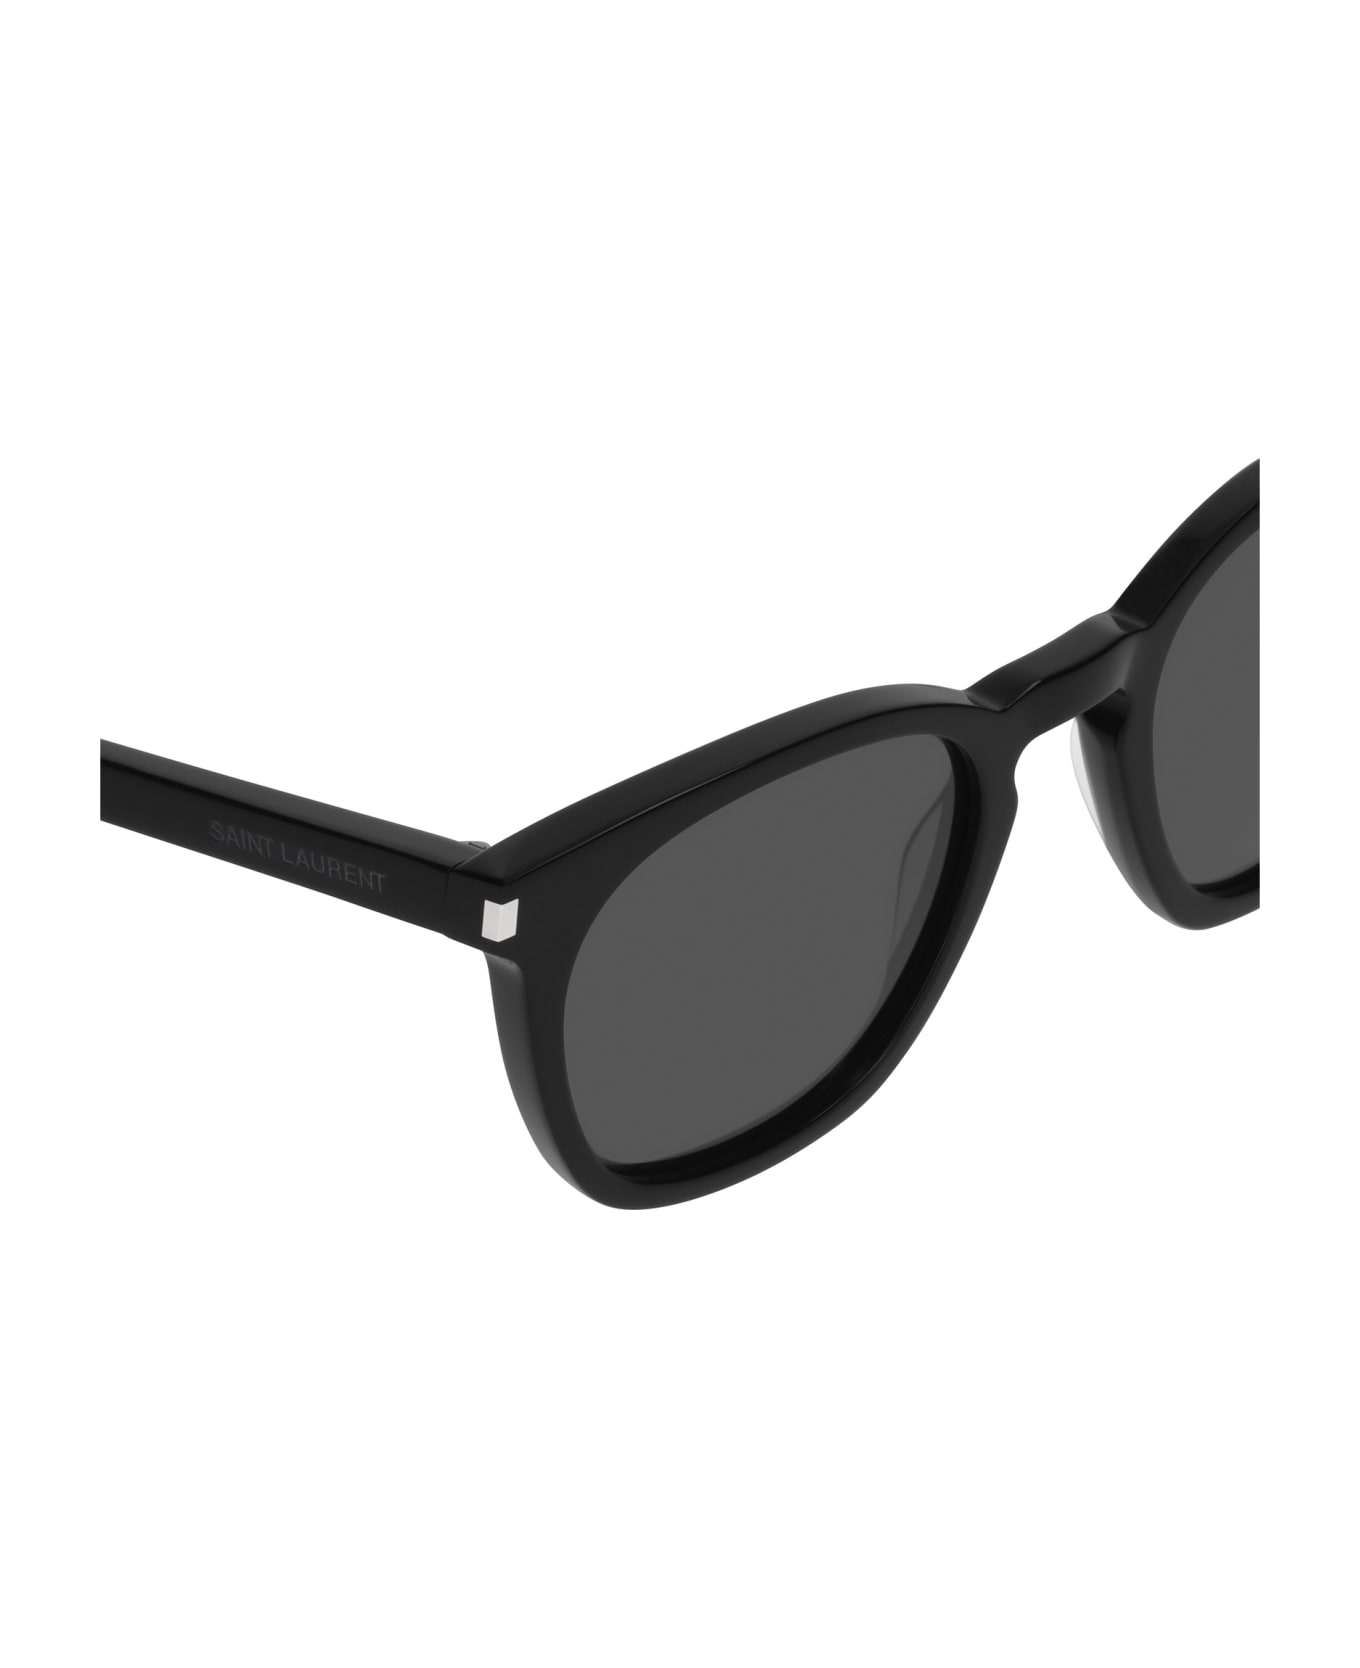 Saint Laurent Eyewear Sl 28 Black Sunglasses - Black サングラス